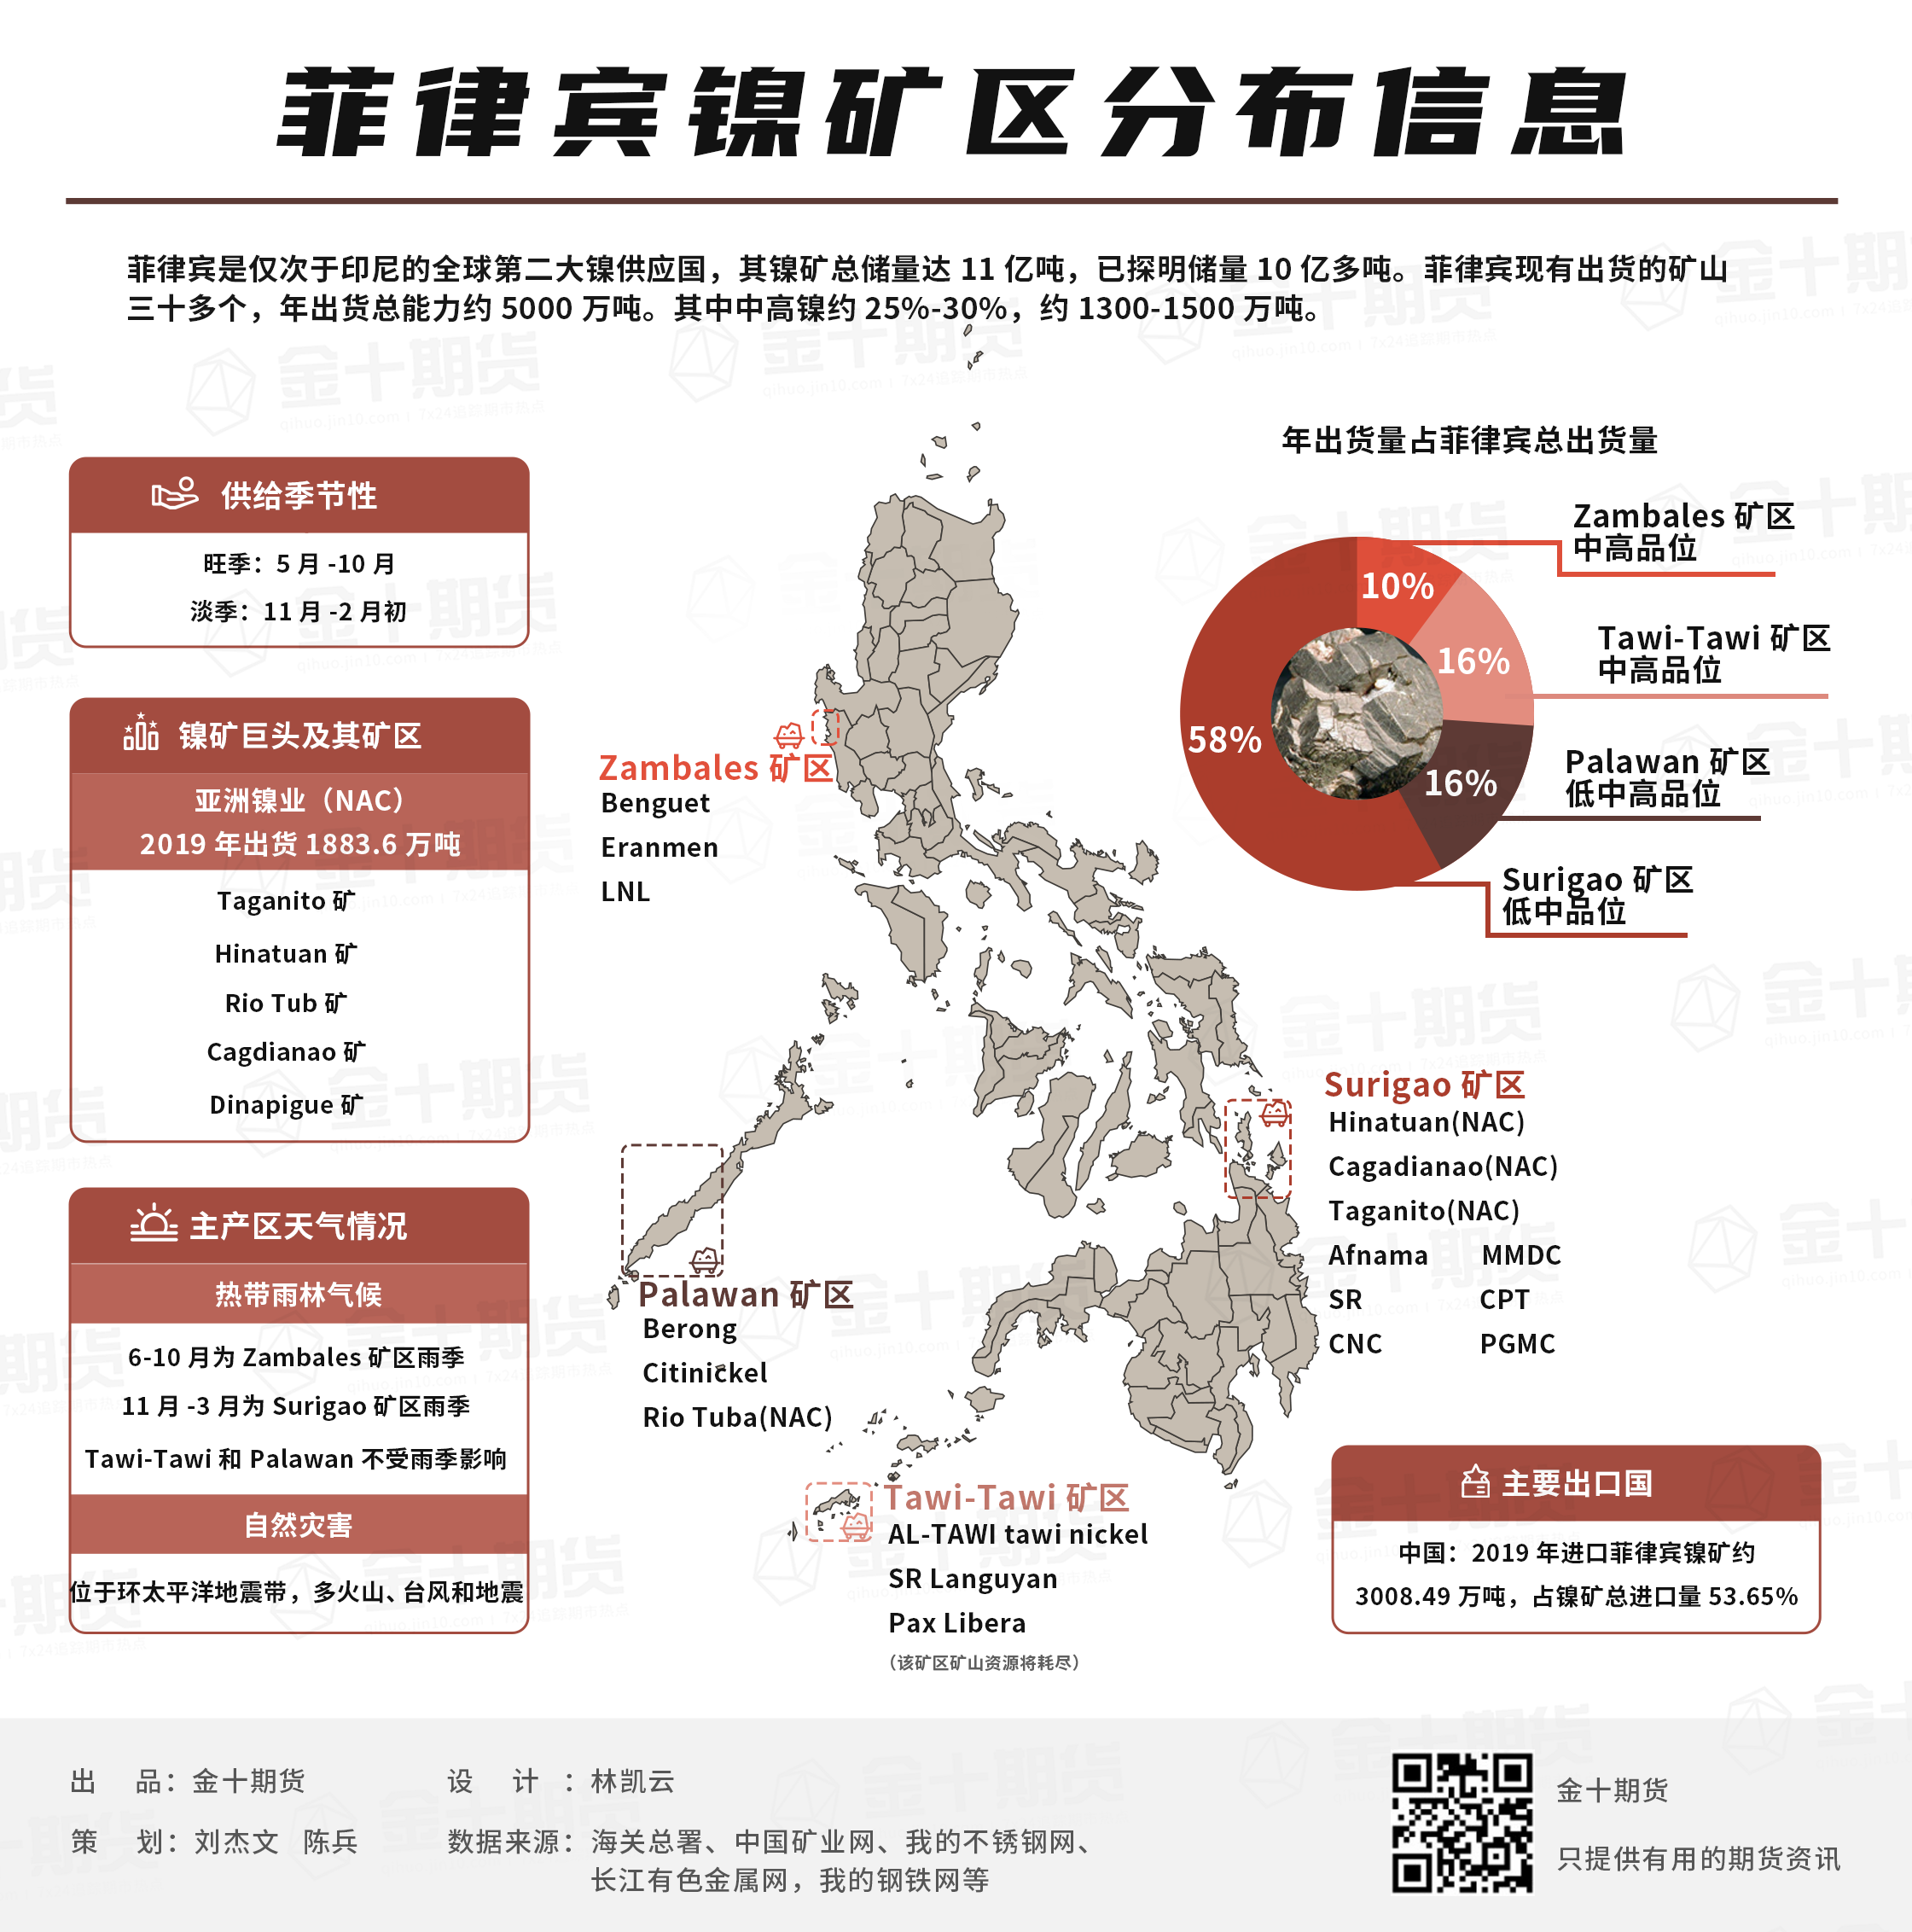 菲律宾镍矿分布及产区信息 